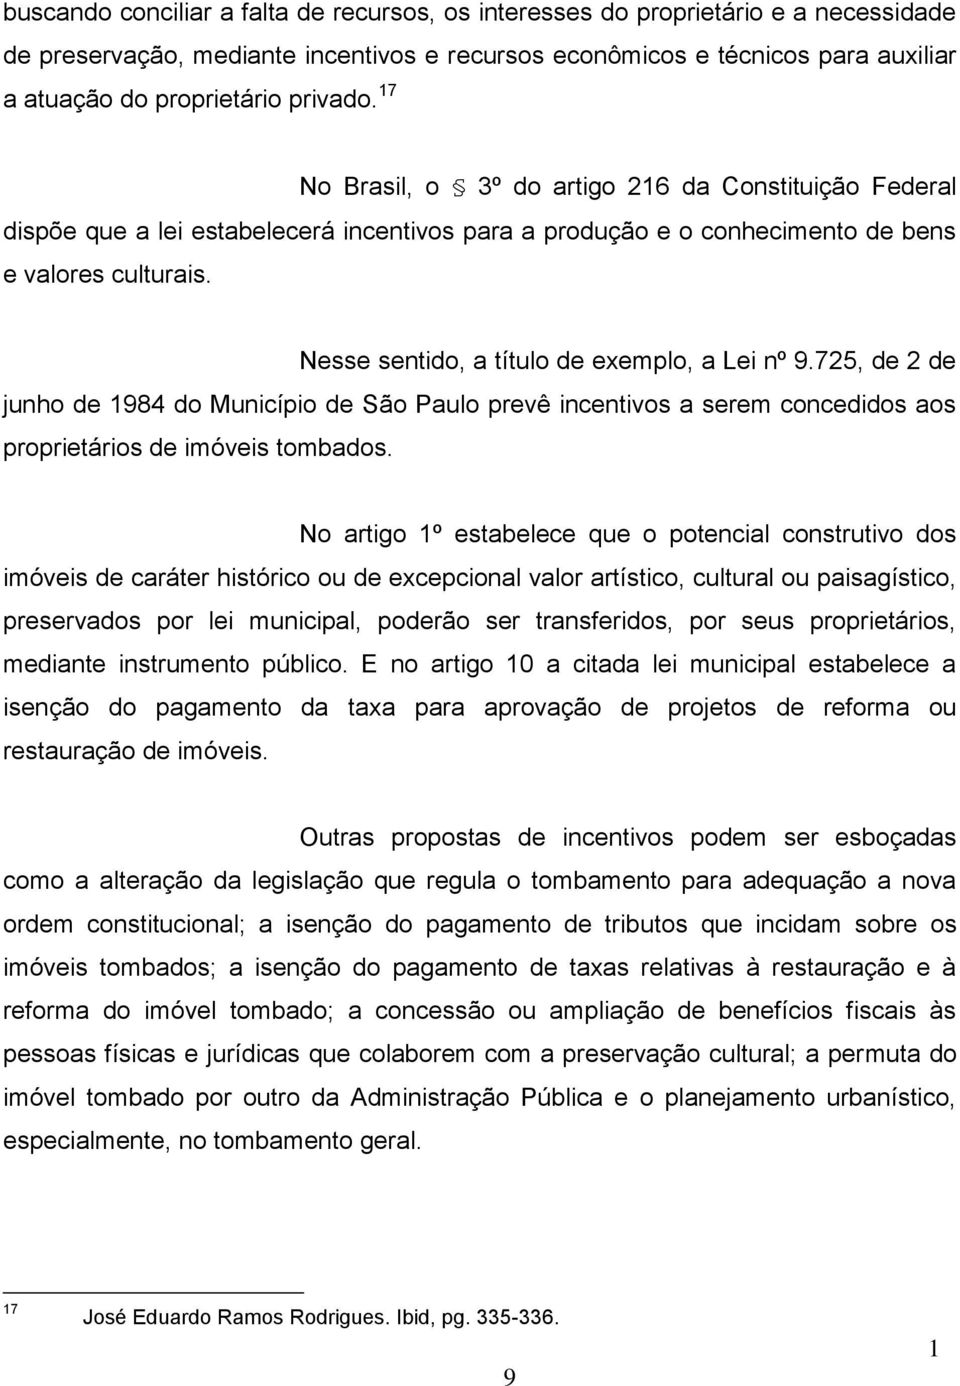 Nesse sentido, a título de exemplo, a Lei nº 9.725, de 2 de junho de 984 do Município de São Paulo prevê incentivos a serem concedidos aos proprietários de imóveis tombados.